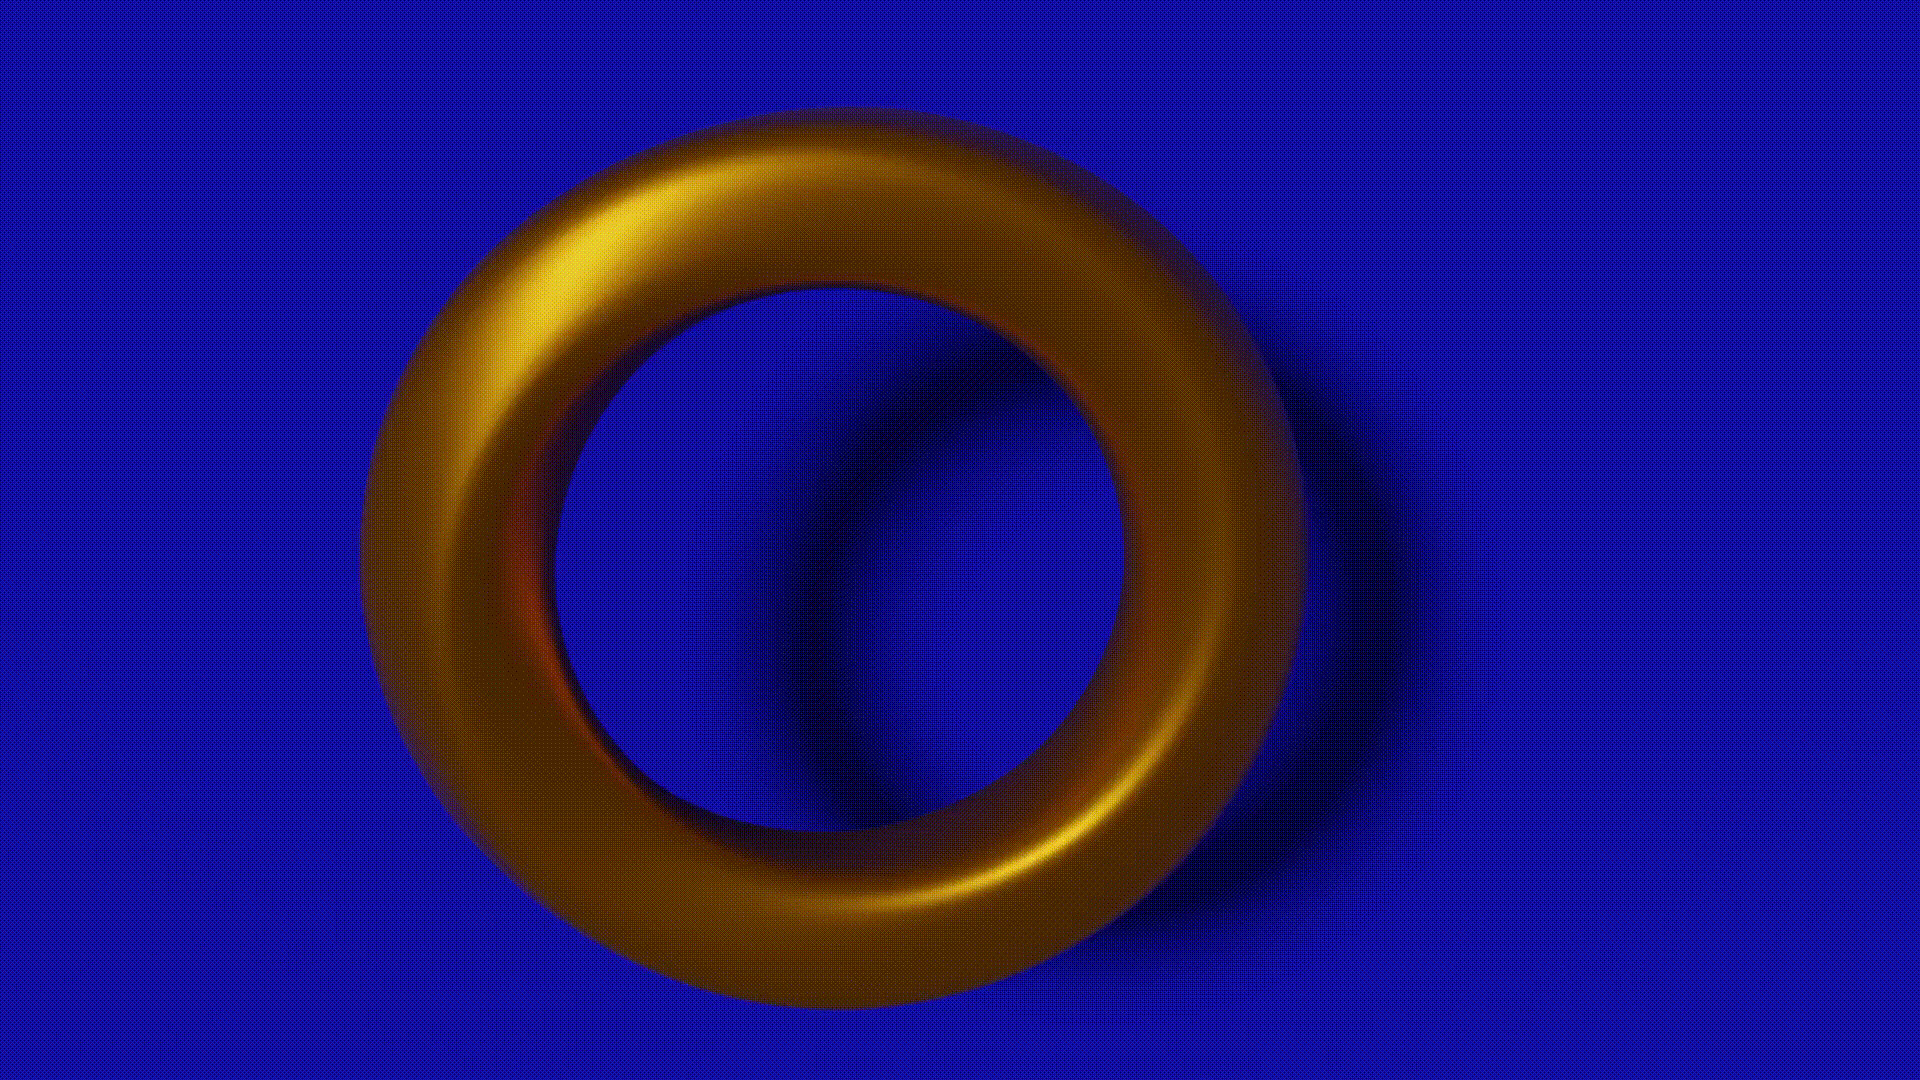 Sonic Movie Ring (VSBGK6FER) by 3D_Magna